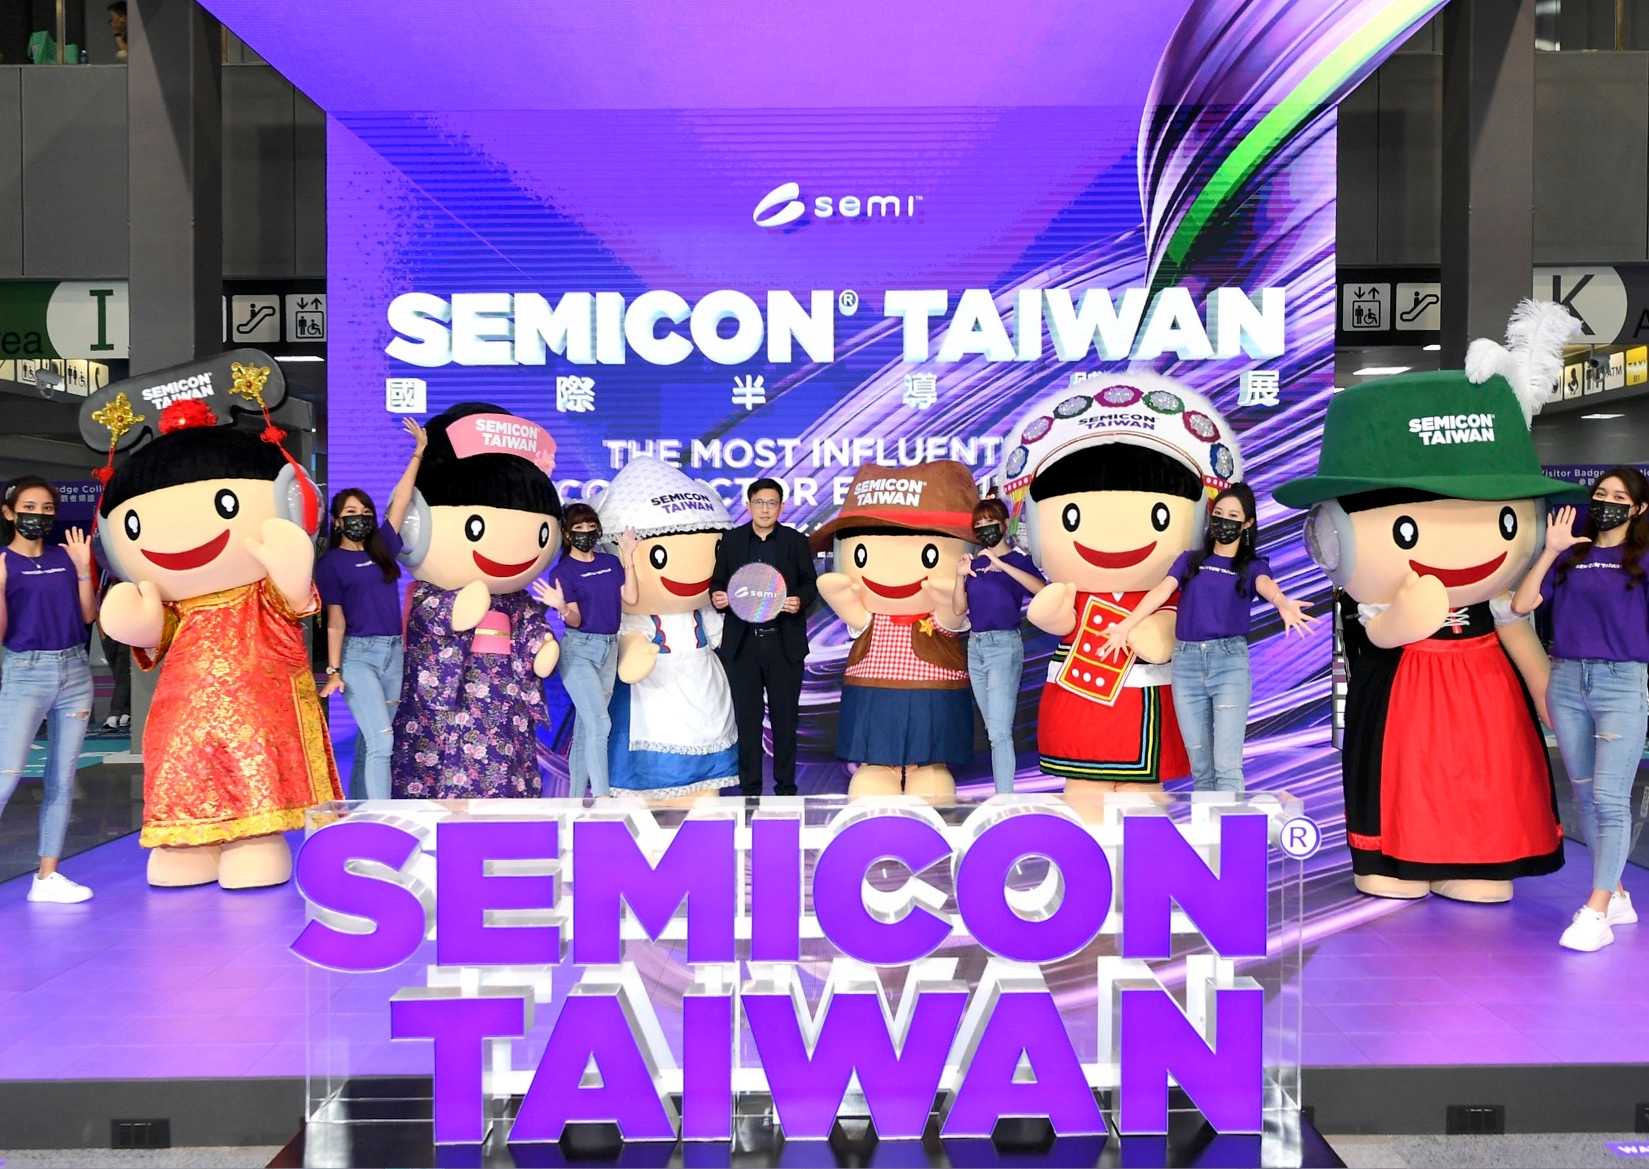 대만 타이베이 반도체 전시회, 세미콘 타이완(SEMICON TAIWAN)